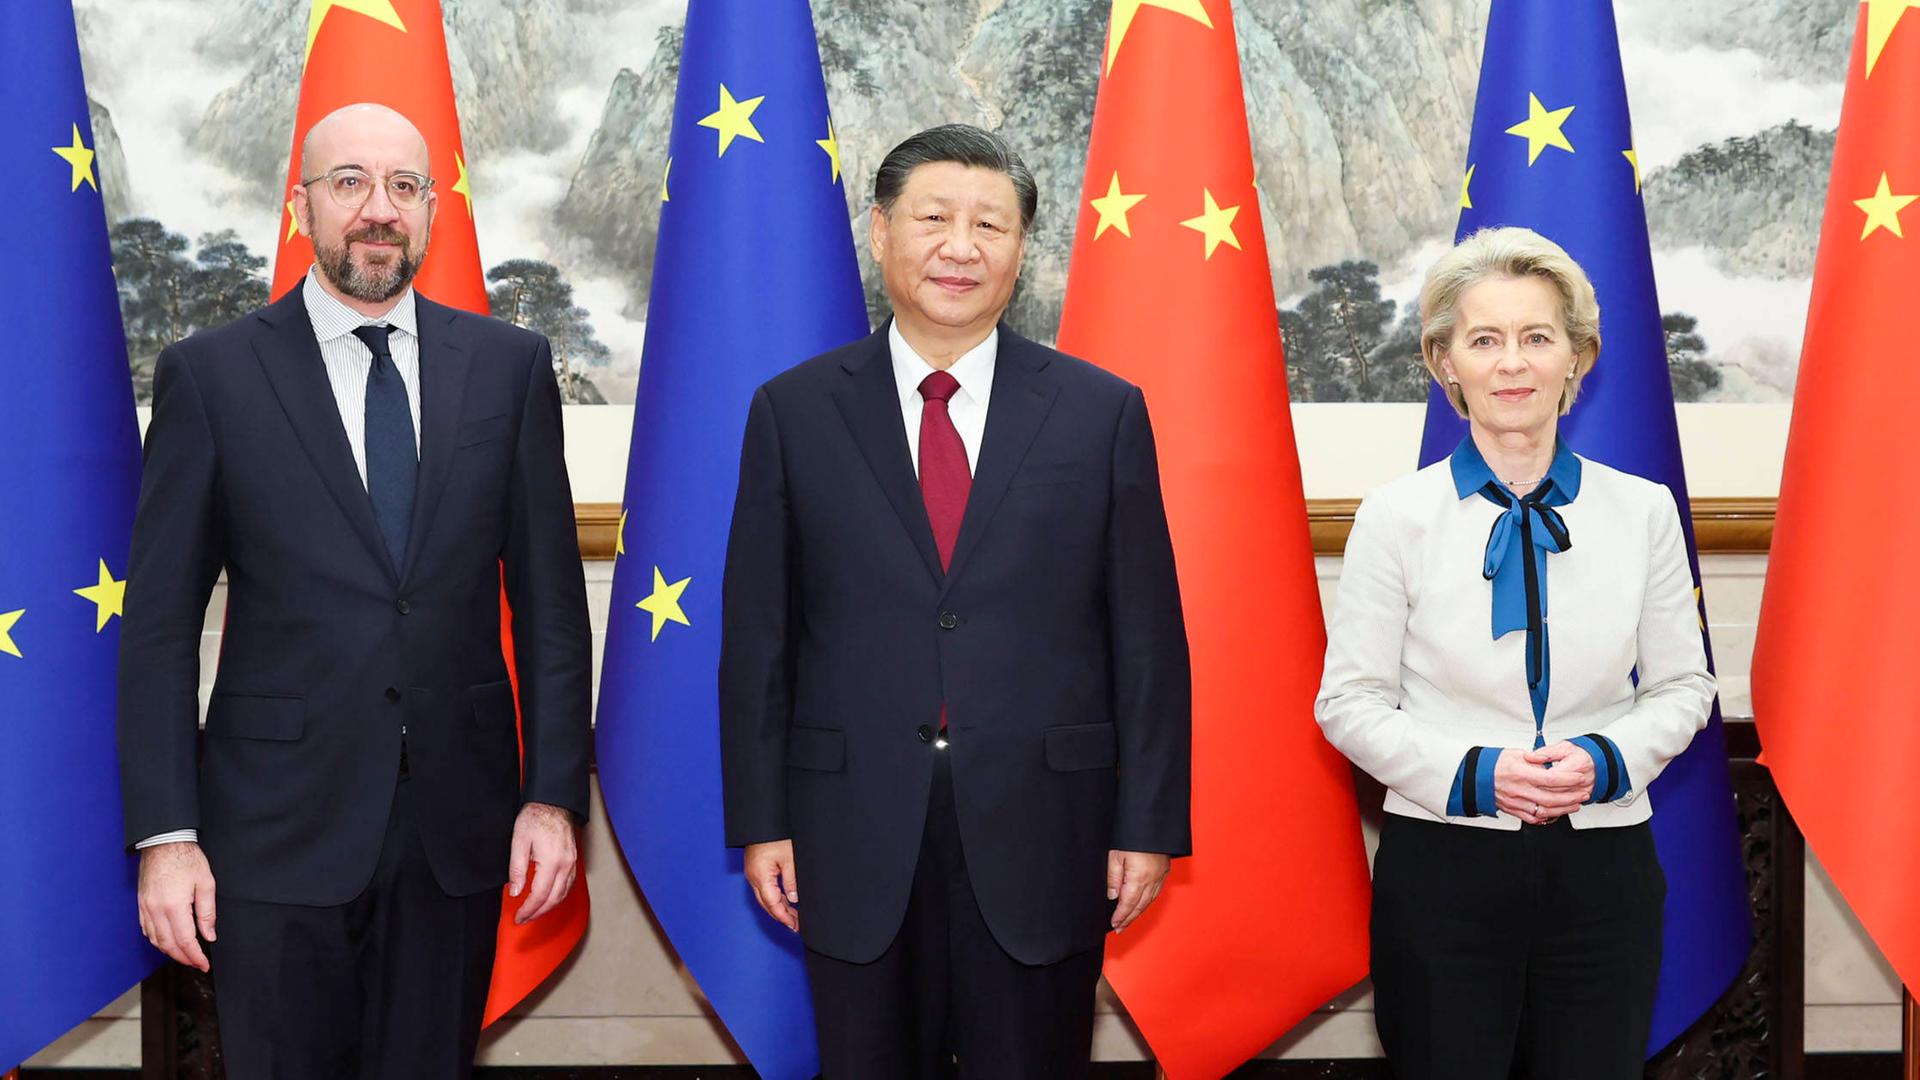 EU-Ratspräsident Michel, Chinas Präsident Xi und EU-Kommissionspräsidentin von der Leyen stehen nebeneinander vor EU- und China-Flaggen.